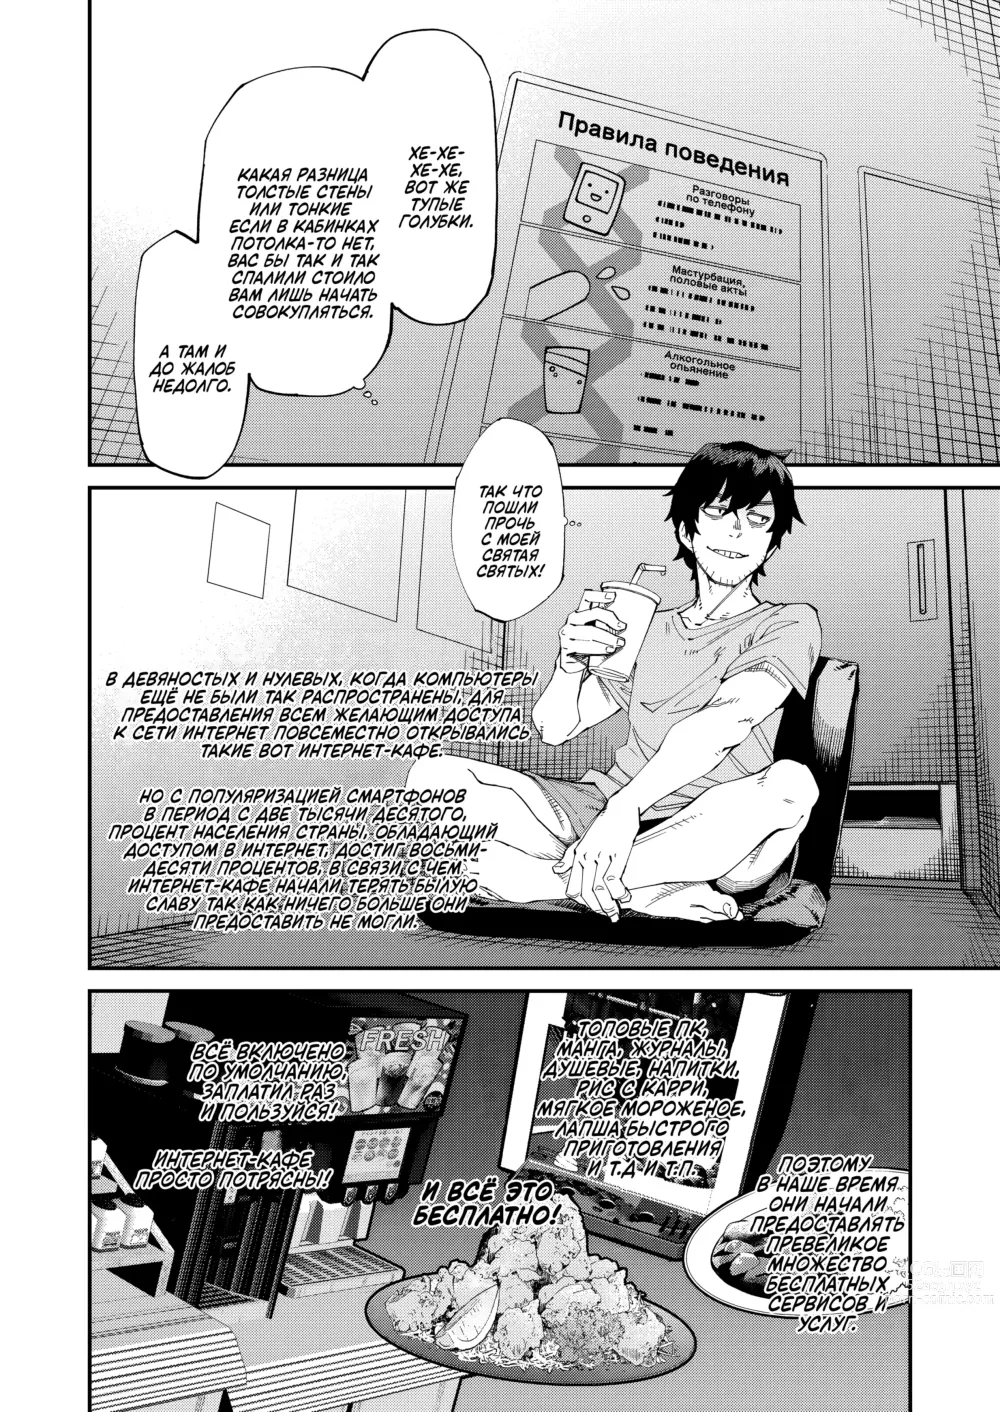 Page 2 of manga Интернет-кафе с тарифом 